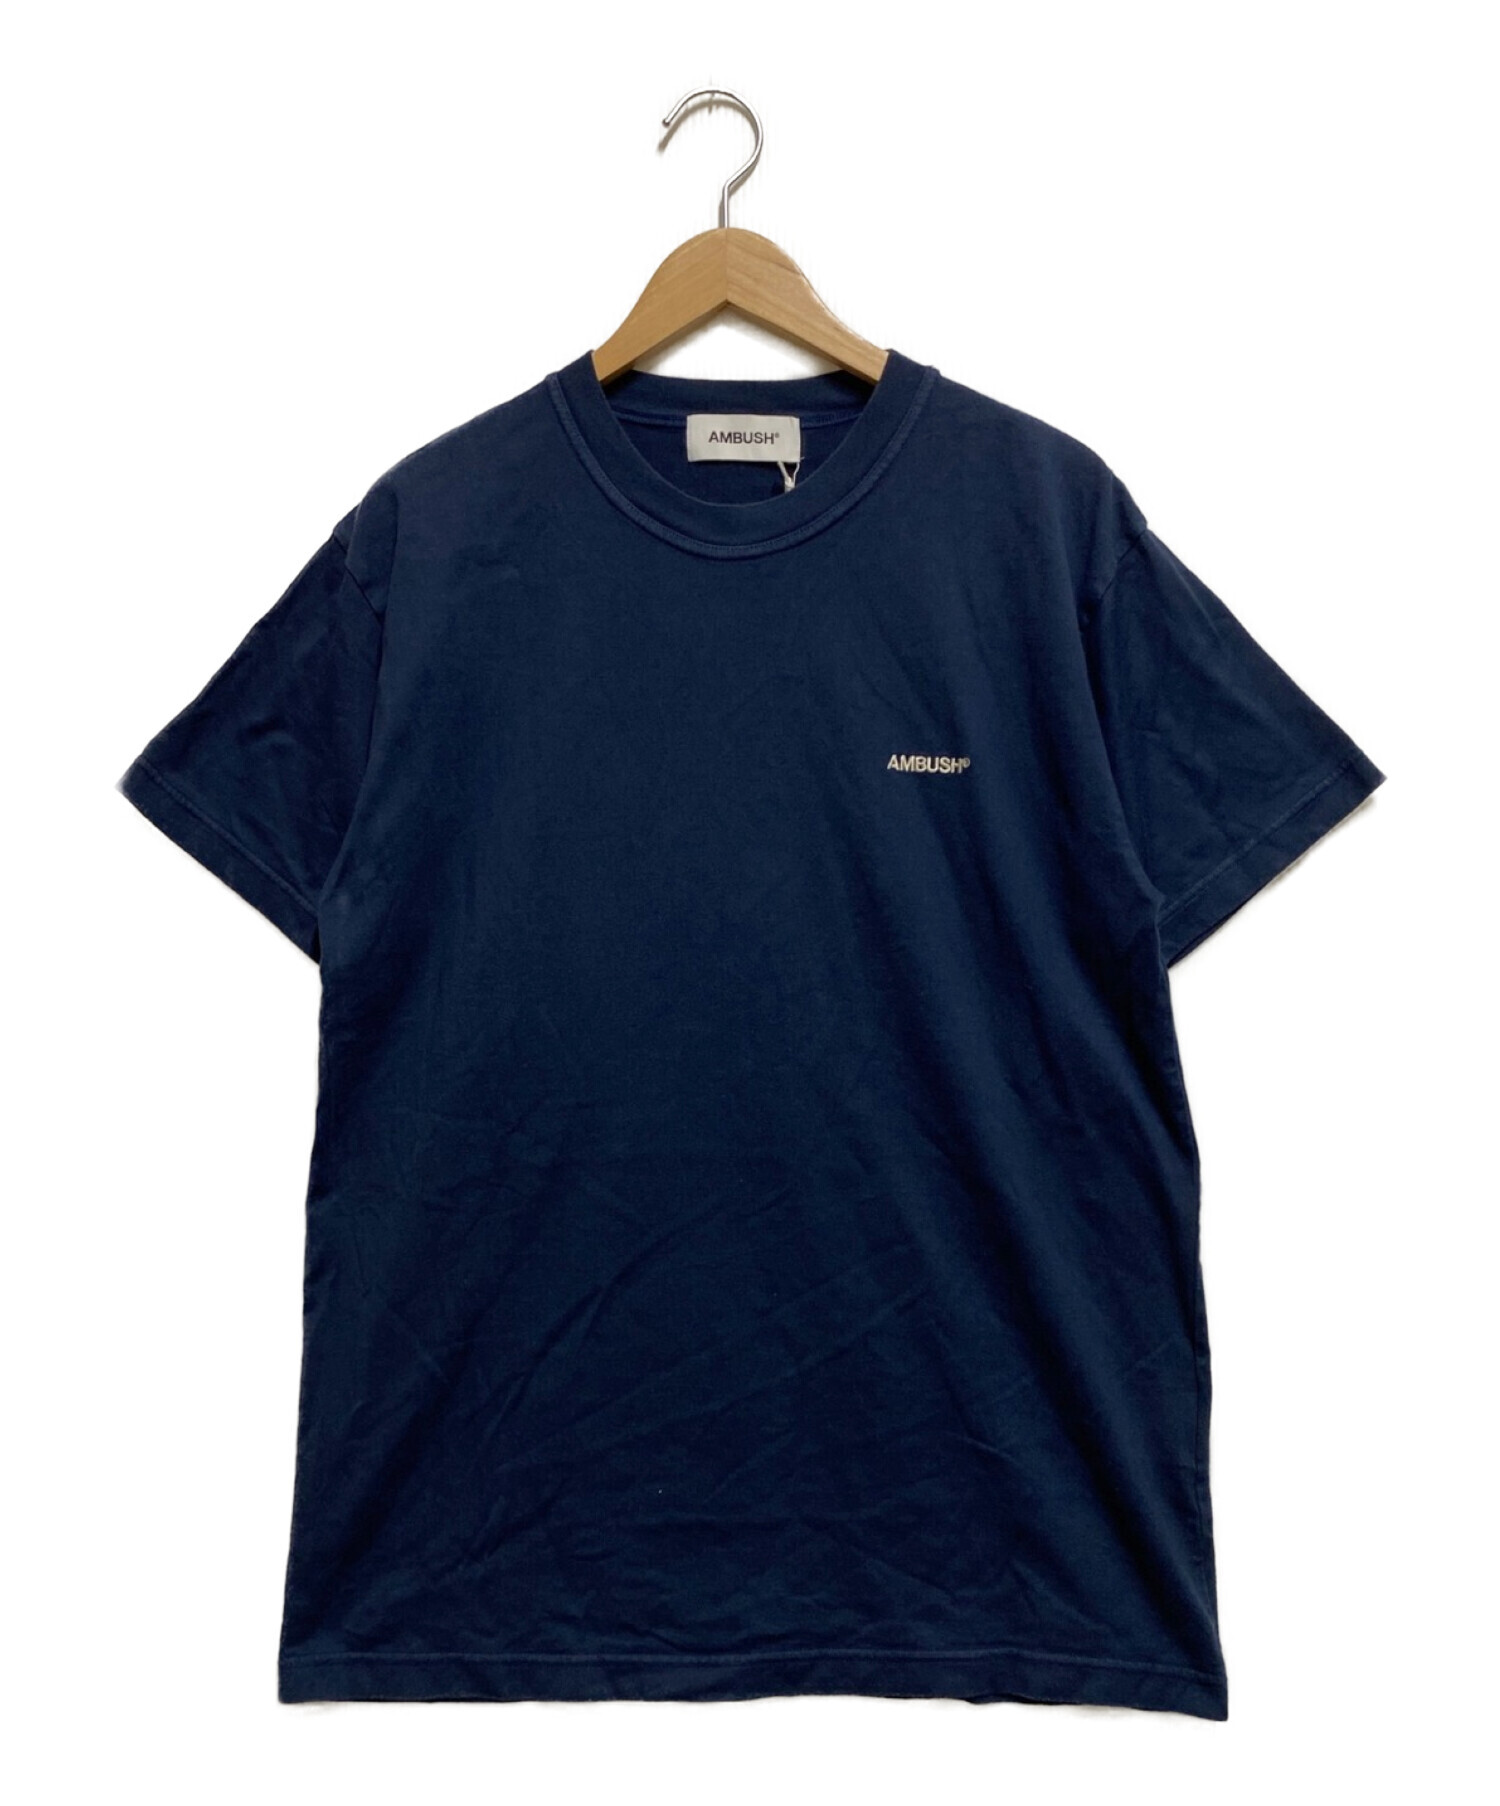 AMBUSH アンブッシュ Tシャツ サイズ3(L)Tシャツ/カットソー(半袖/袖 